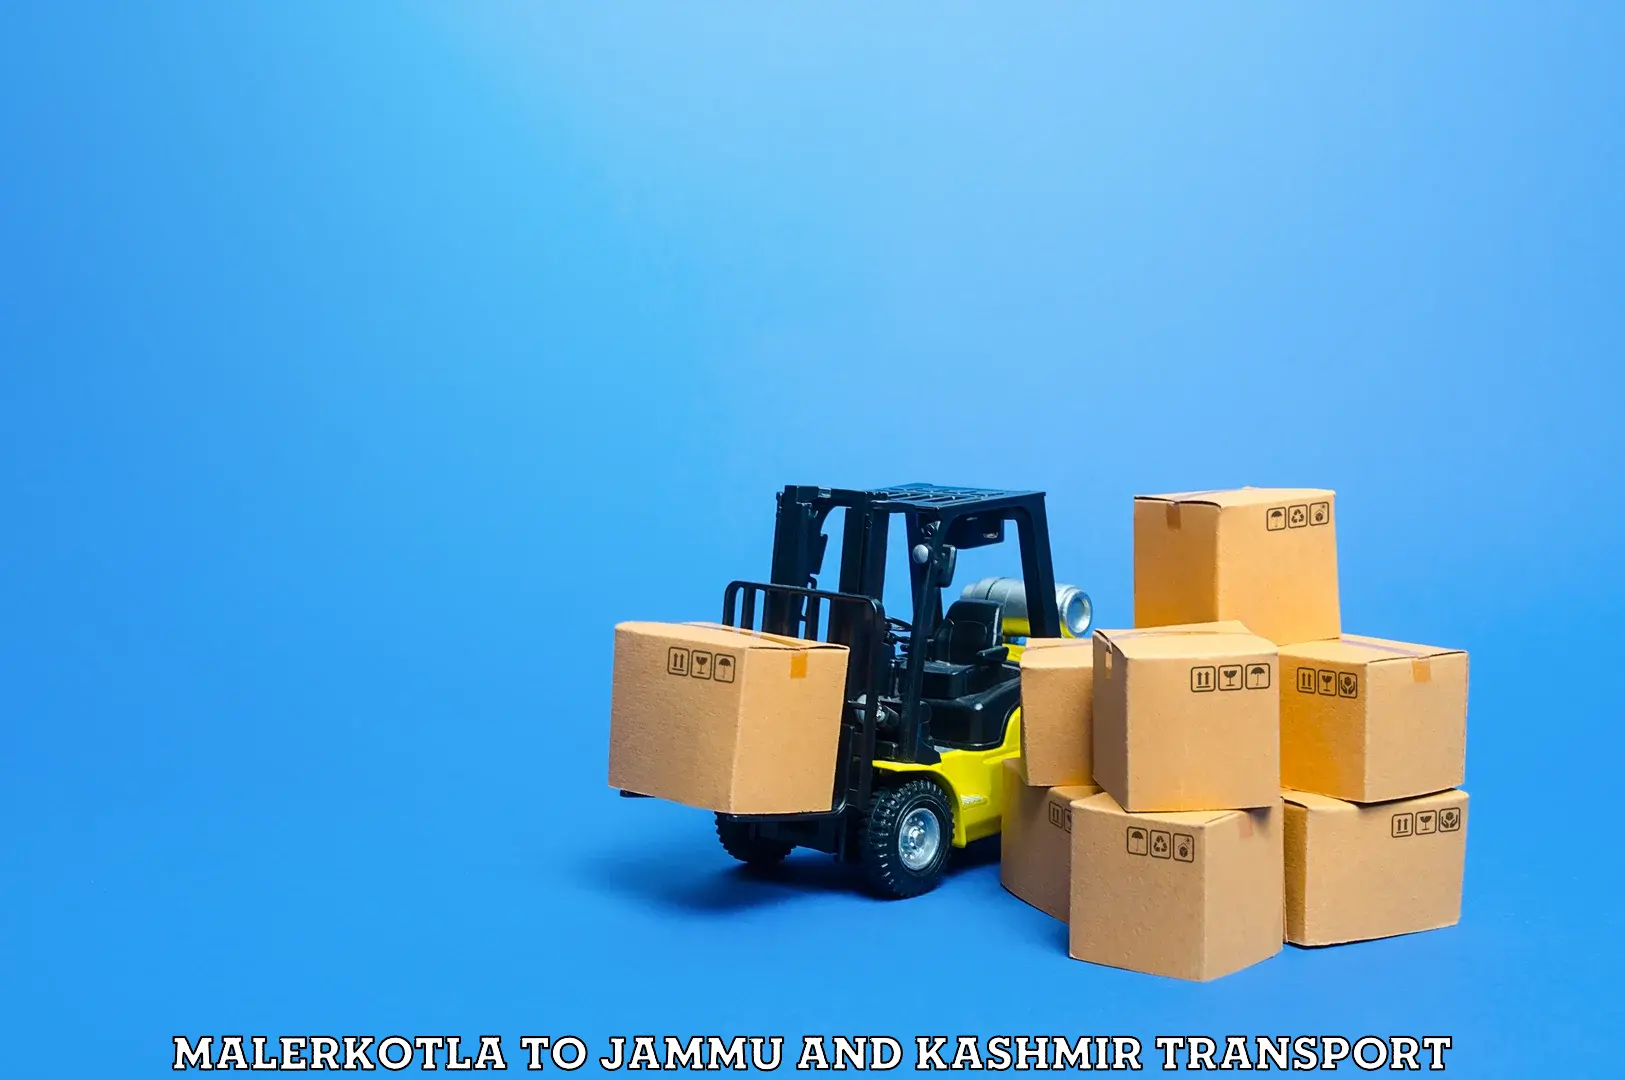 Package delivery services Malerkotla to Srinagar Kashmir